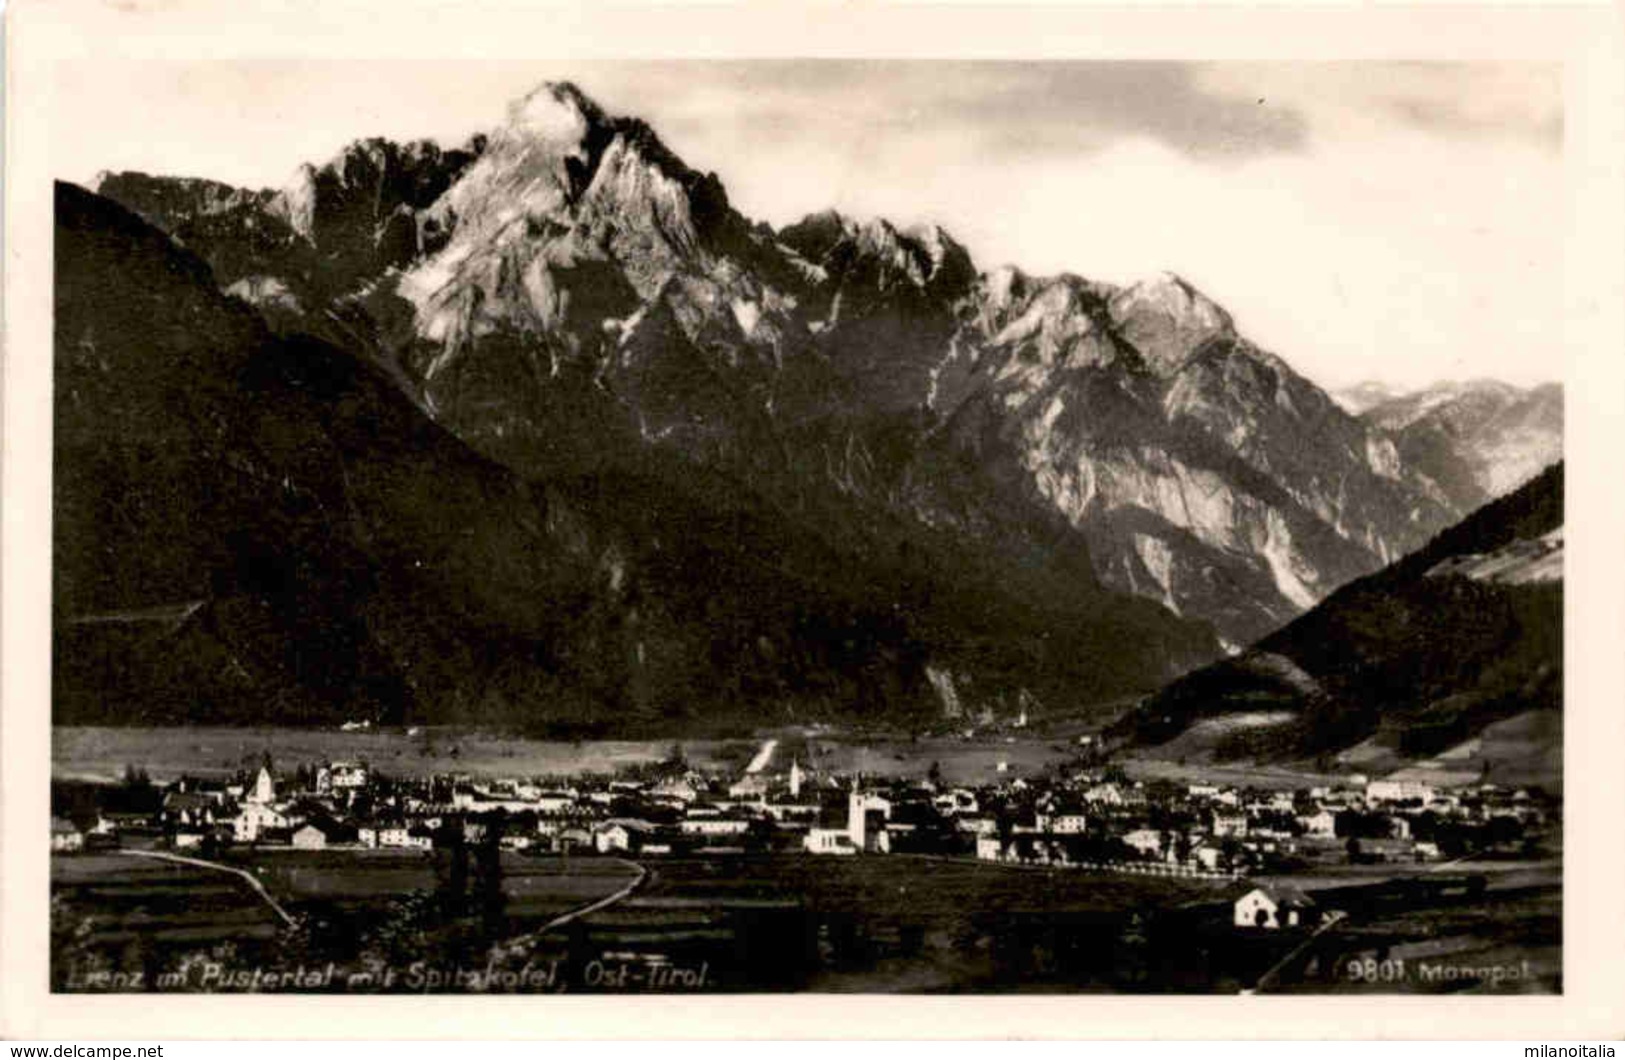 Lienz Im Pustertal Mit Spitzkofel, Ost-Tirol (9801) * 21. 3. 1932 - Lienz